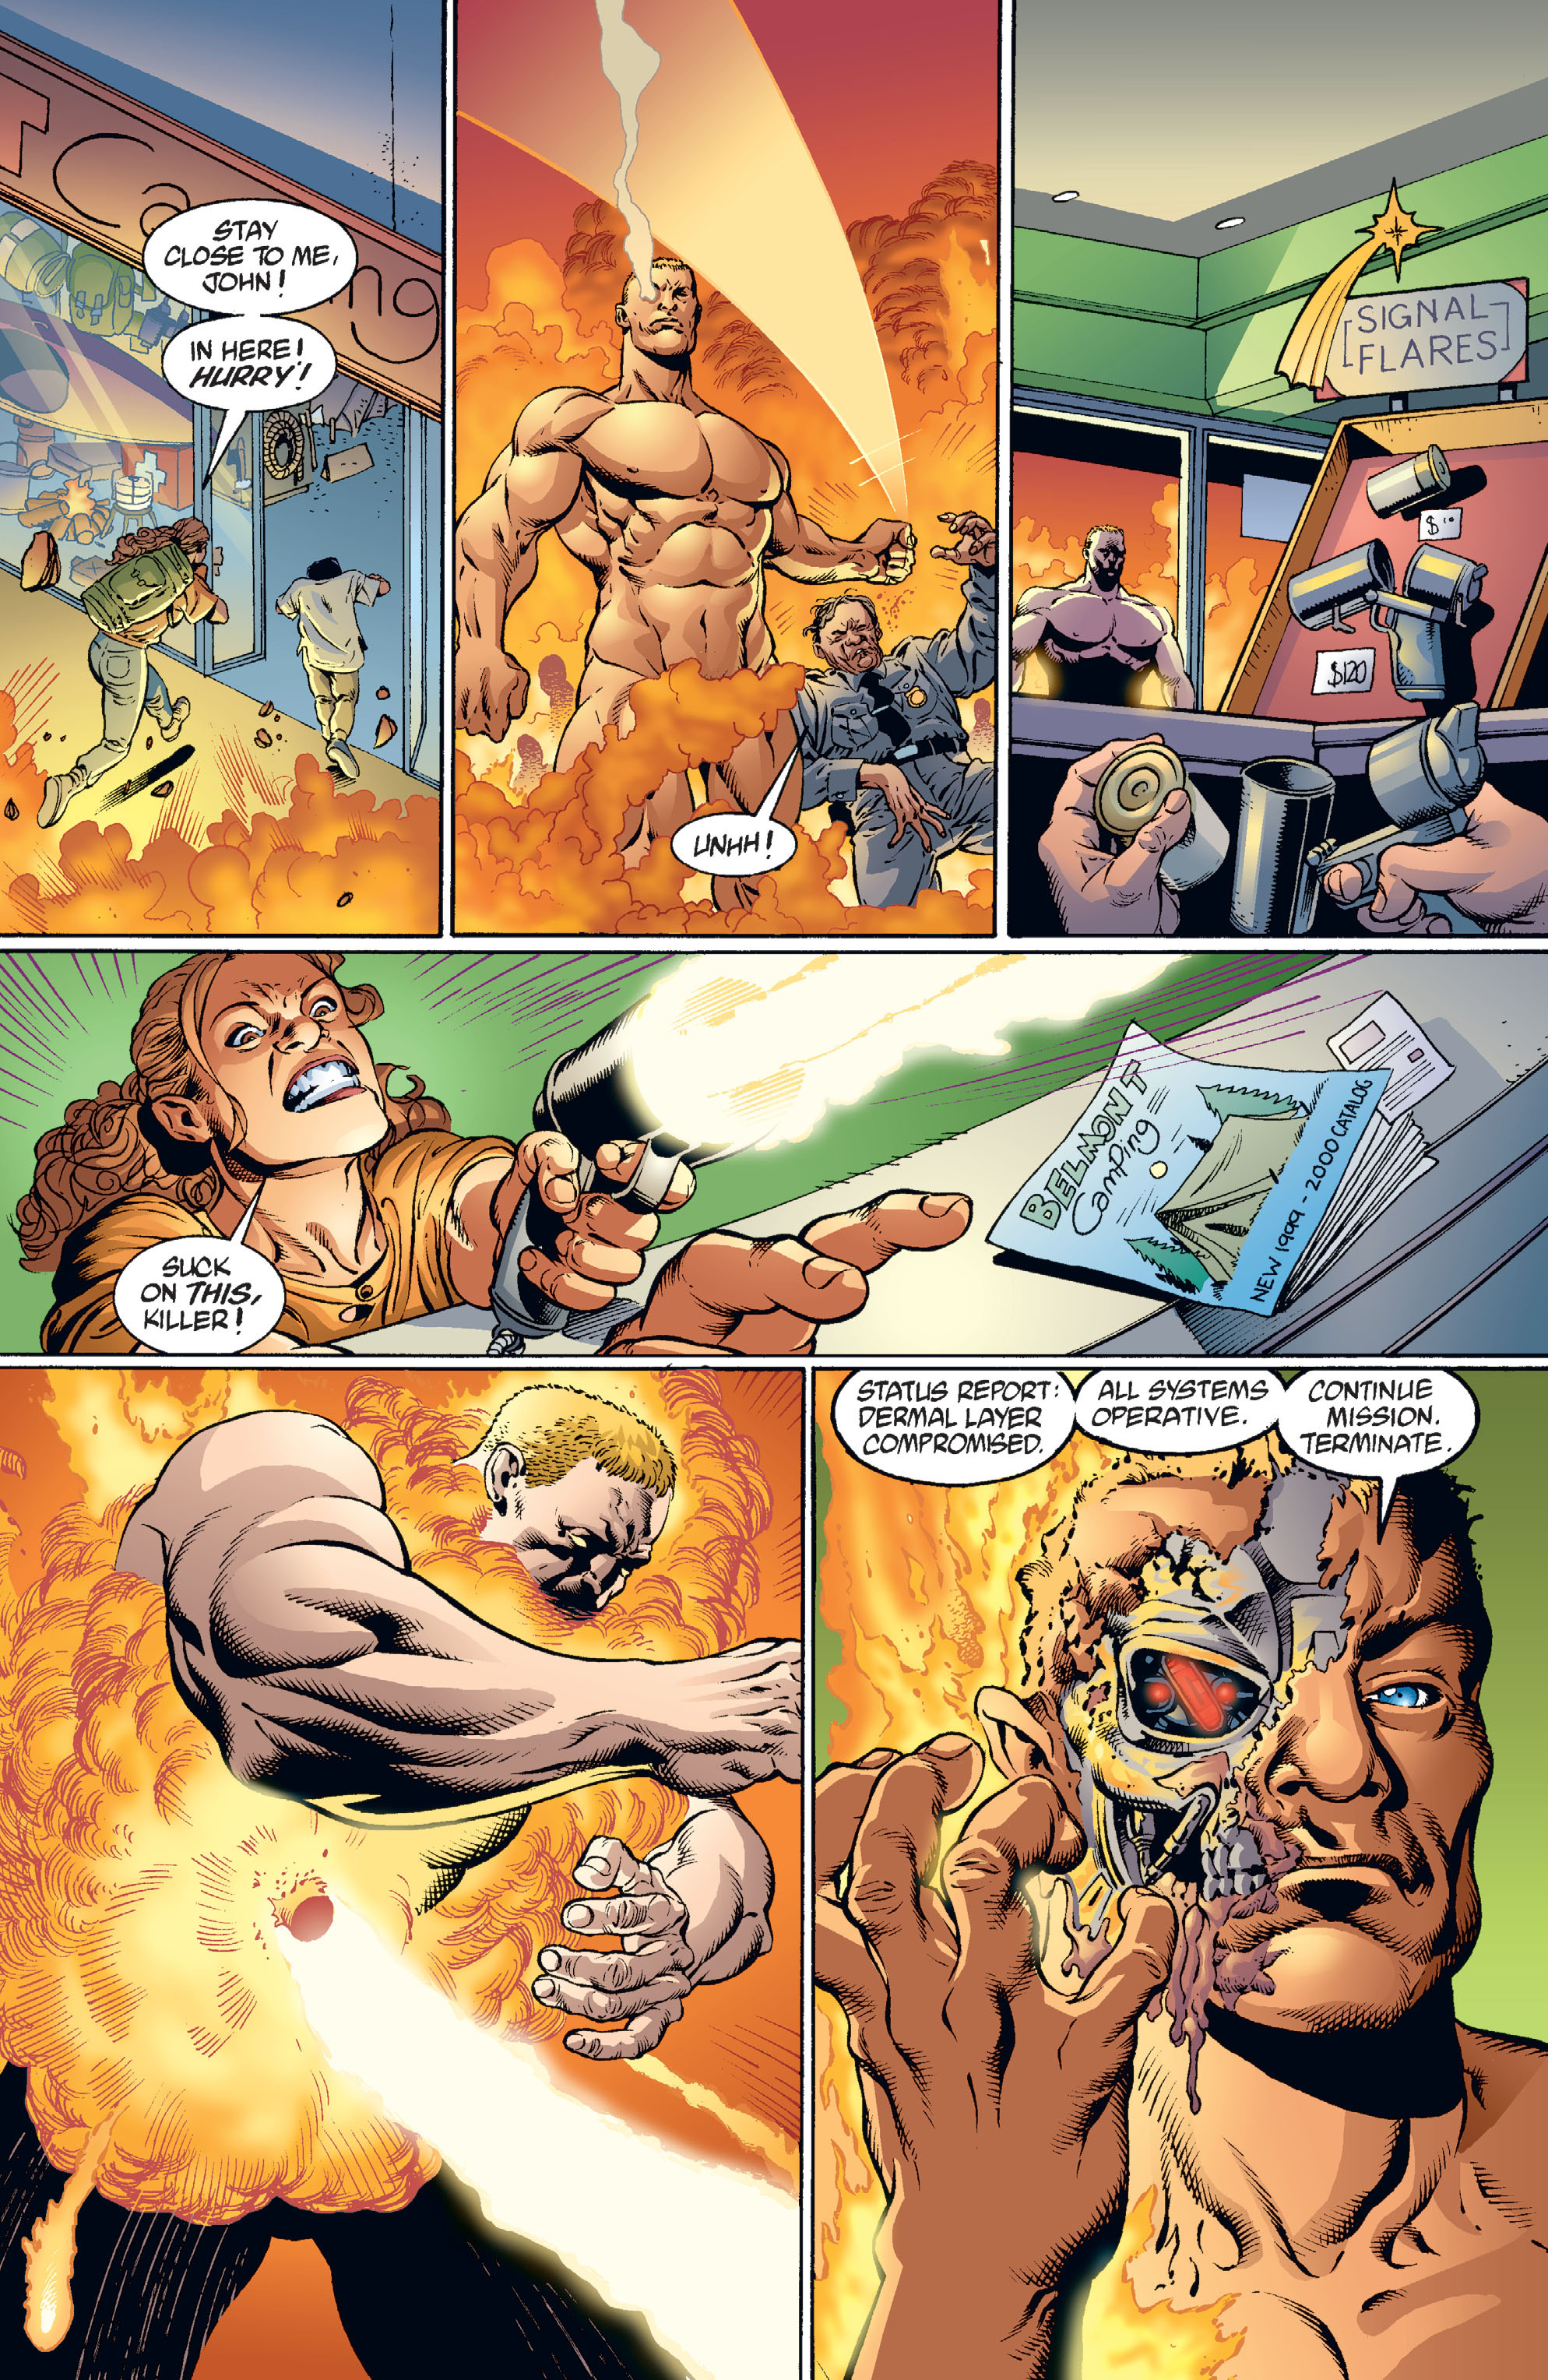 DC Comics/Dark Horse Comics: Justice League Full #1 - English 152